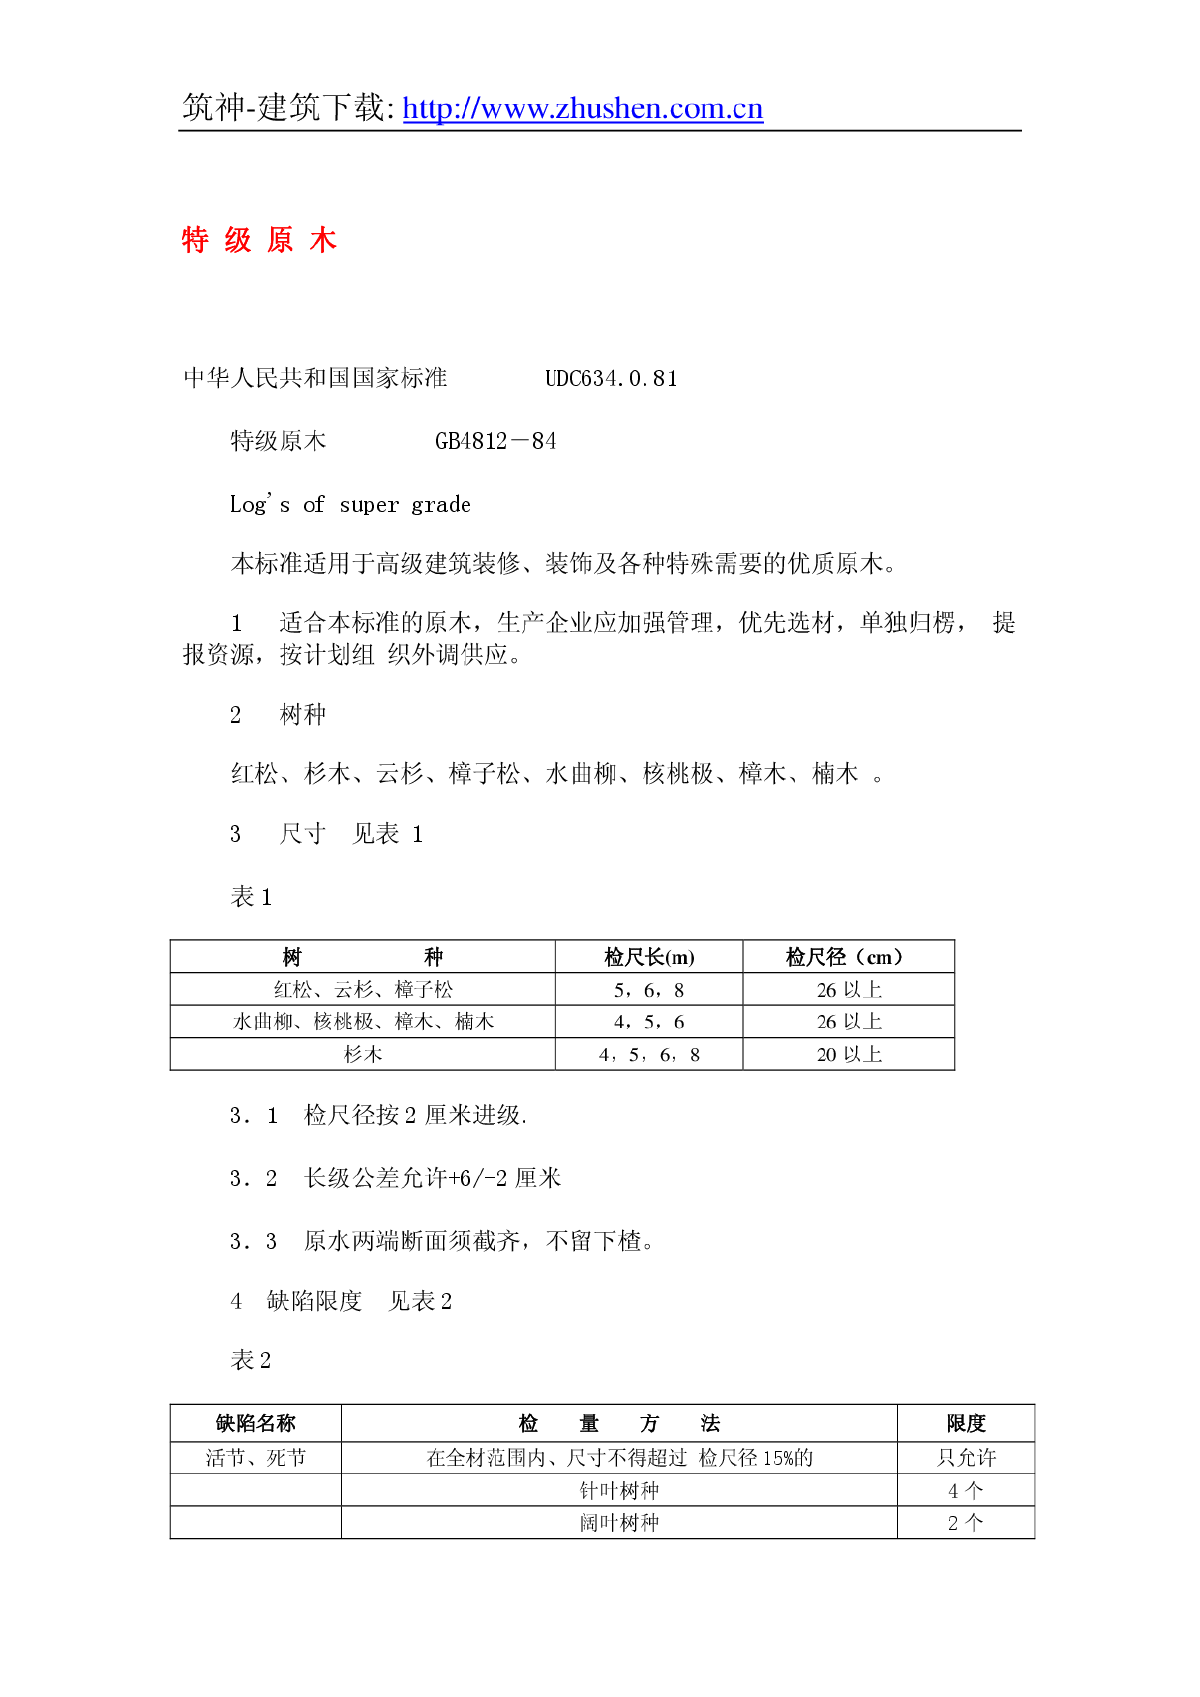 GB4812-84特级原木.pdf